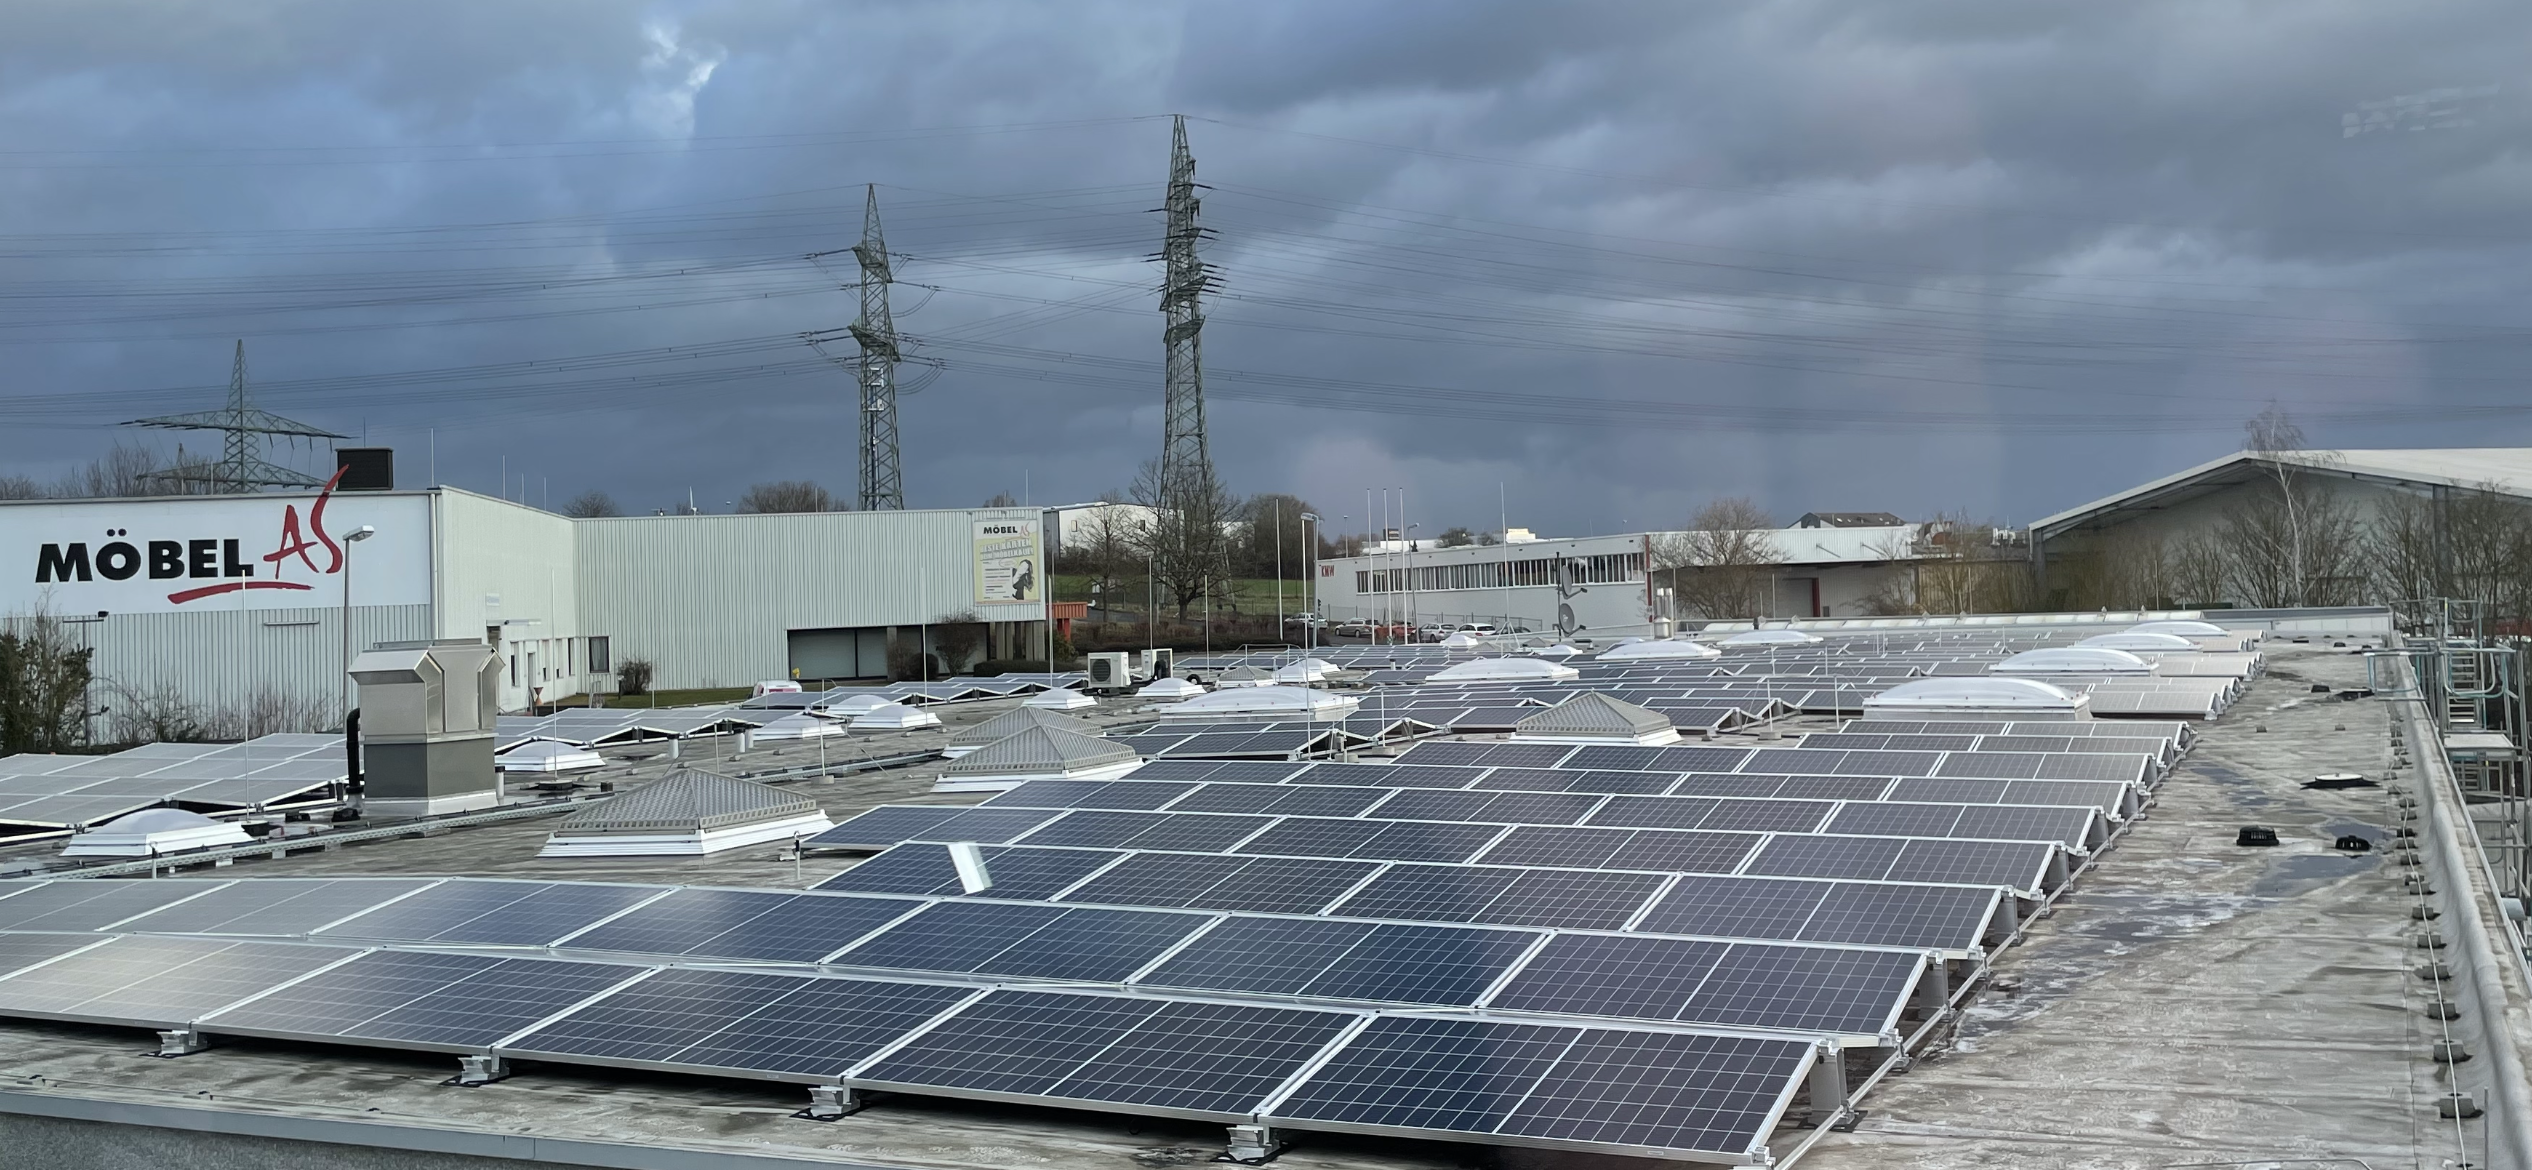 IMG 5407 - Solarpaneele im Dachsstück